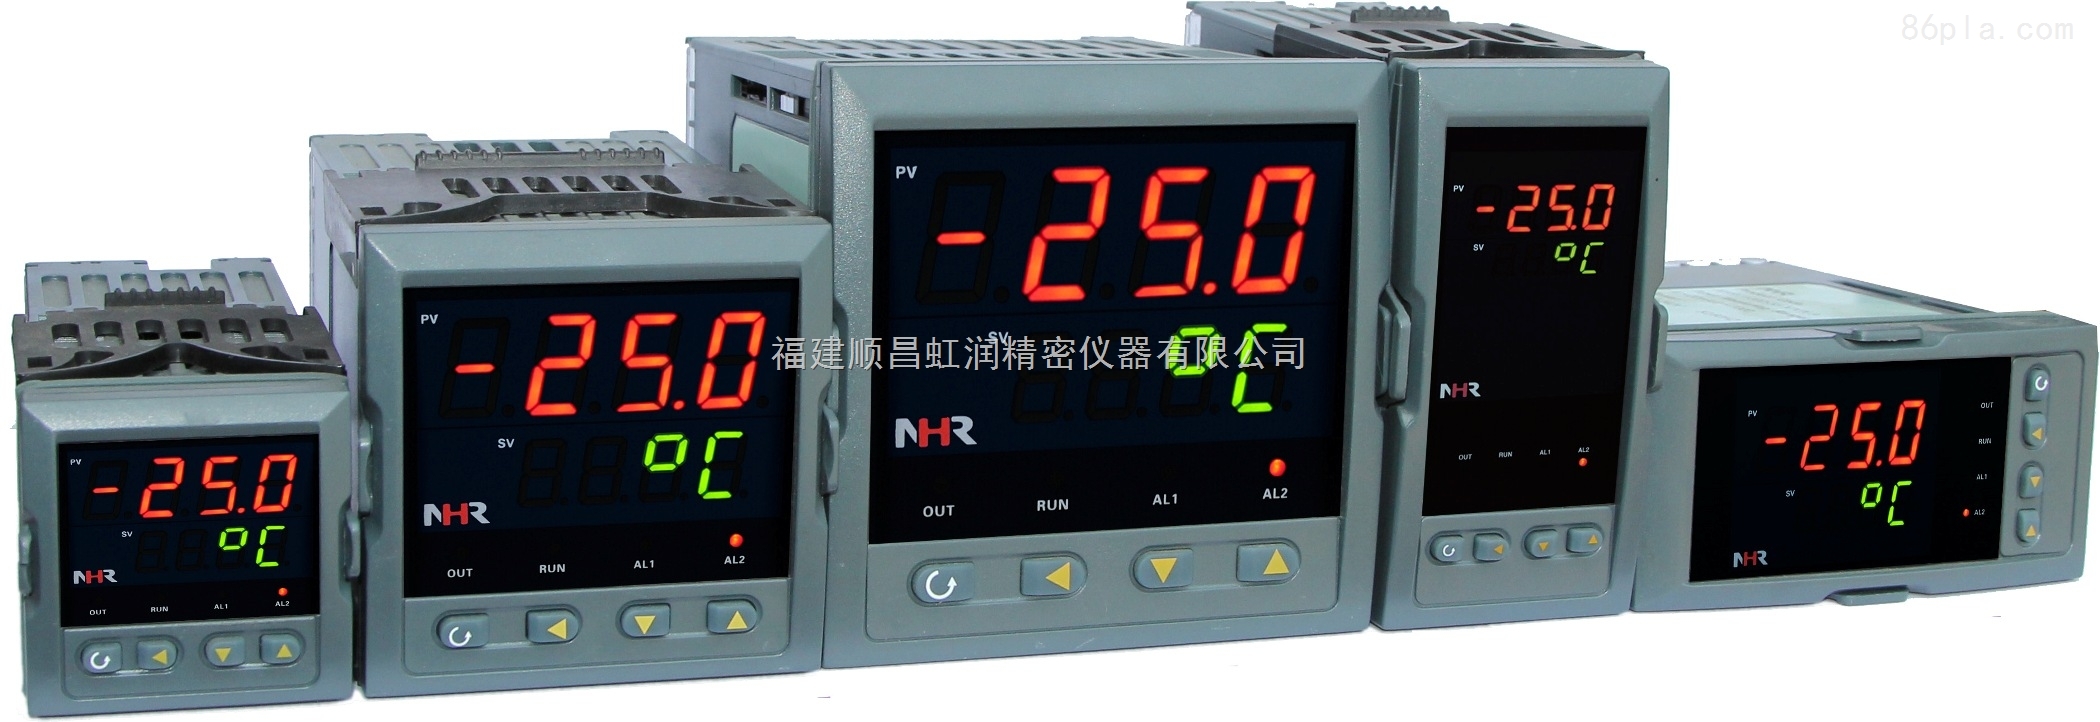 *NHR-1300/1340系列傻瓜式模糊PID调节仪/程序段控制调节仪